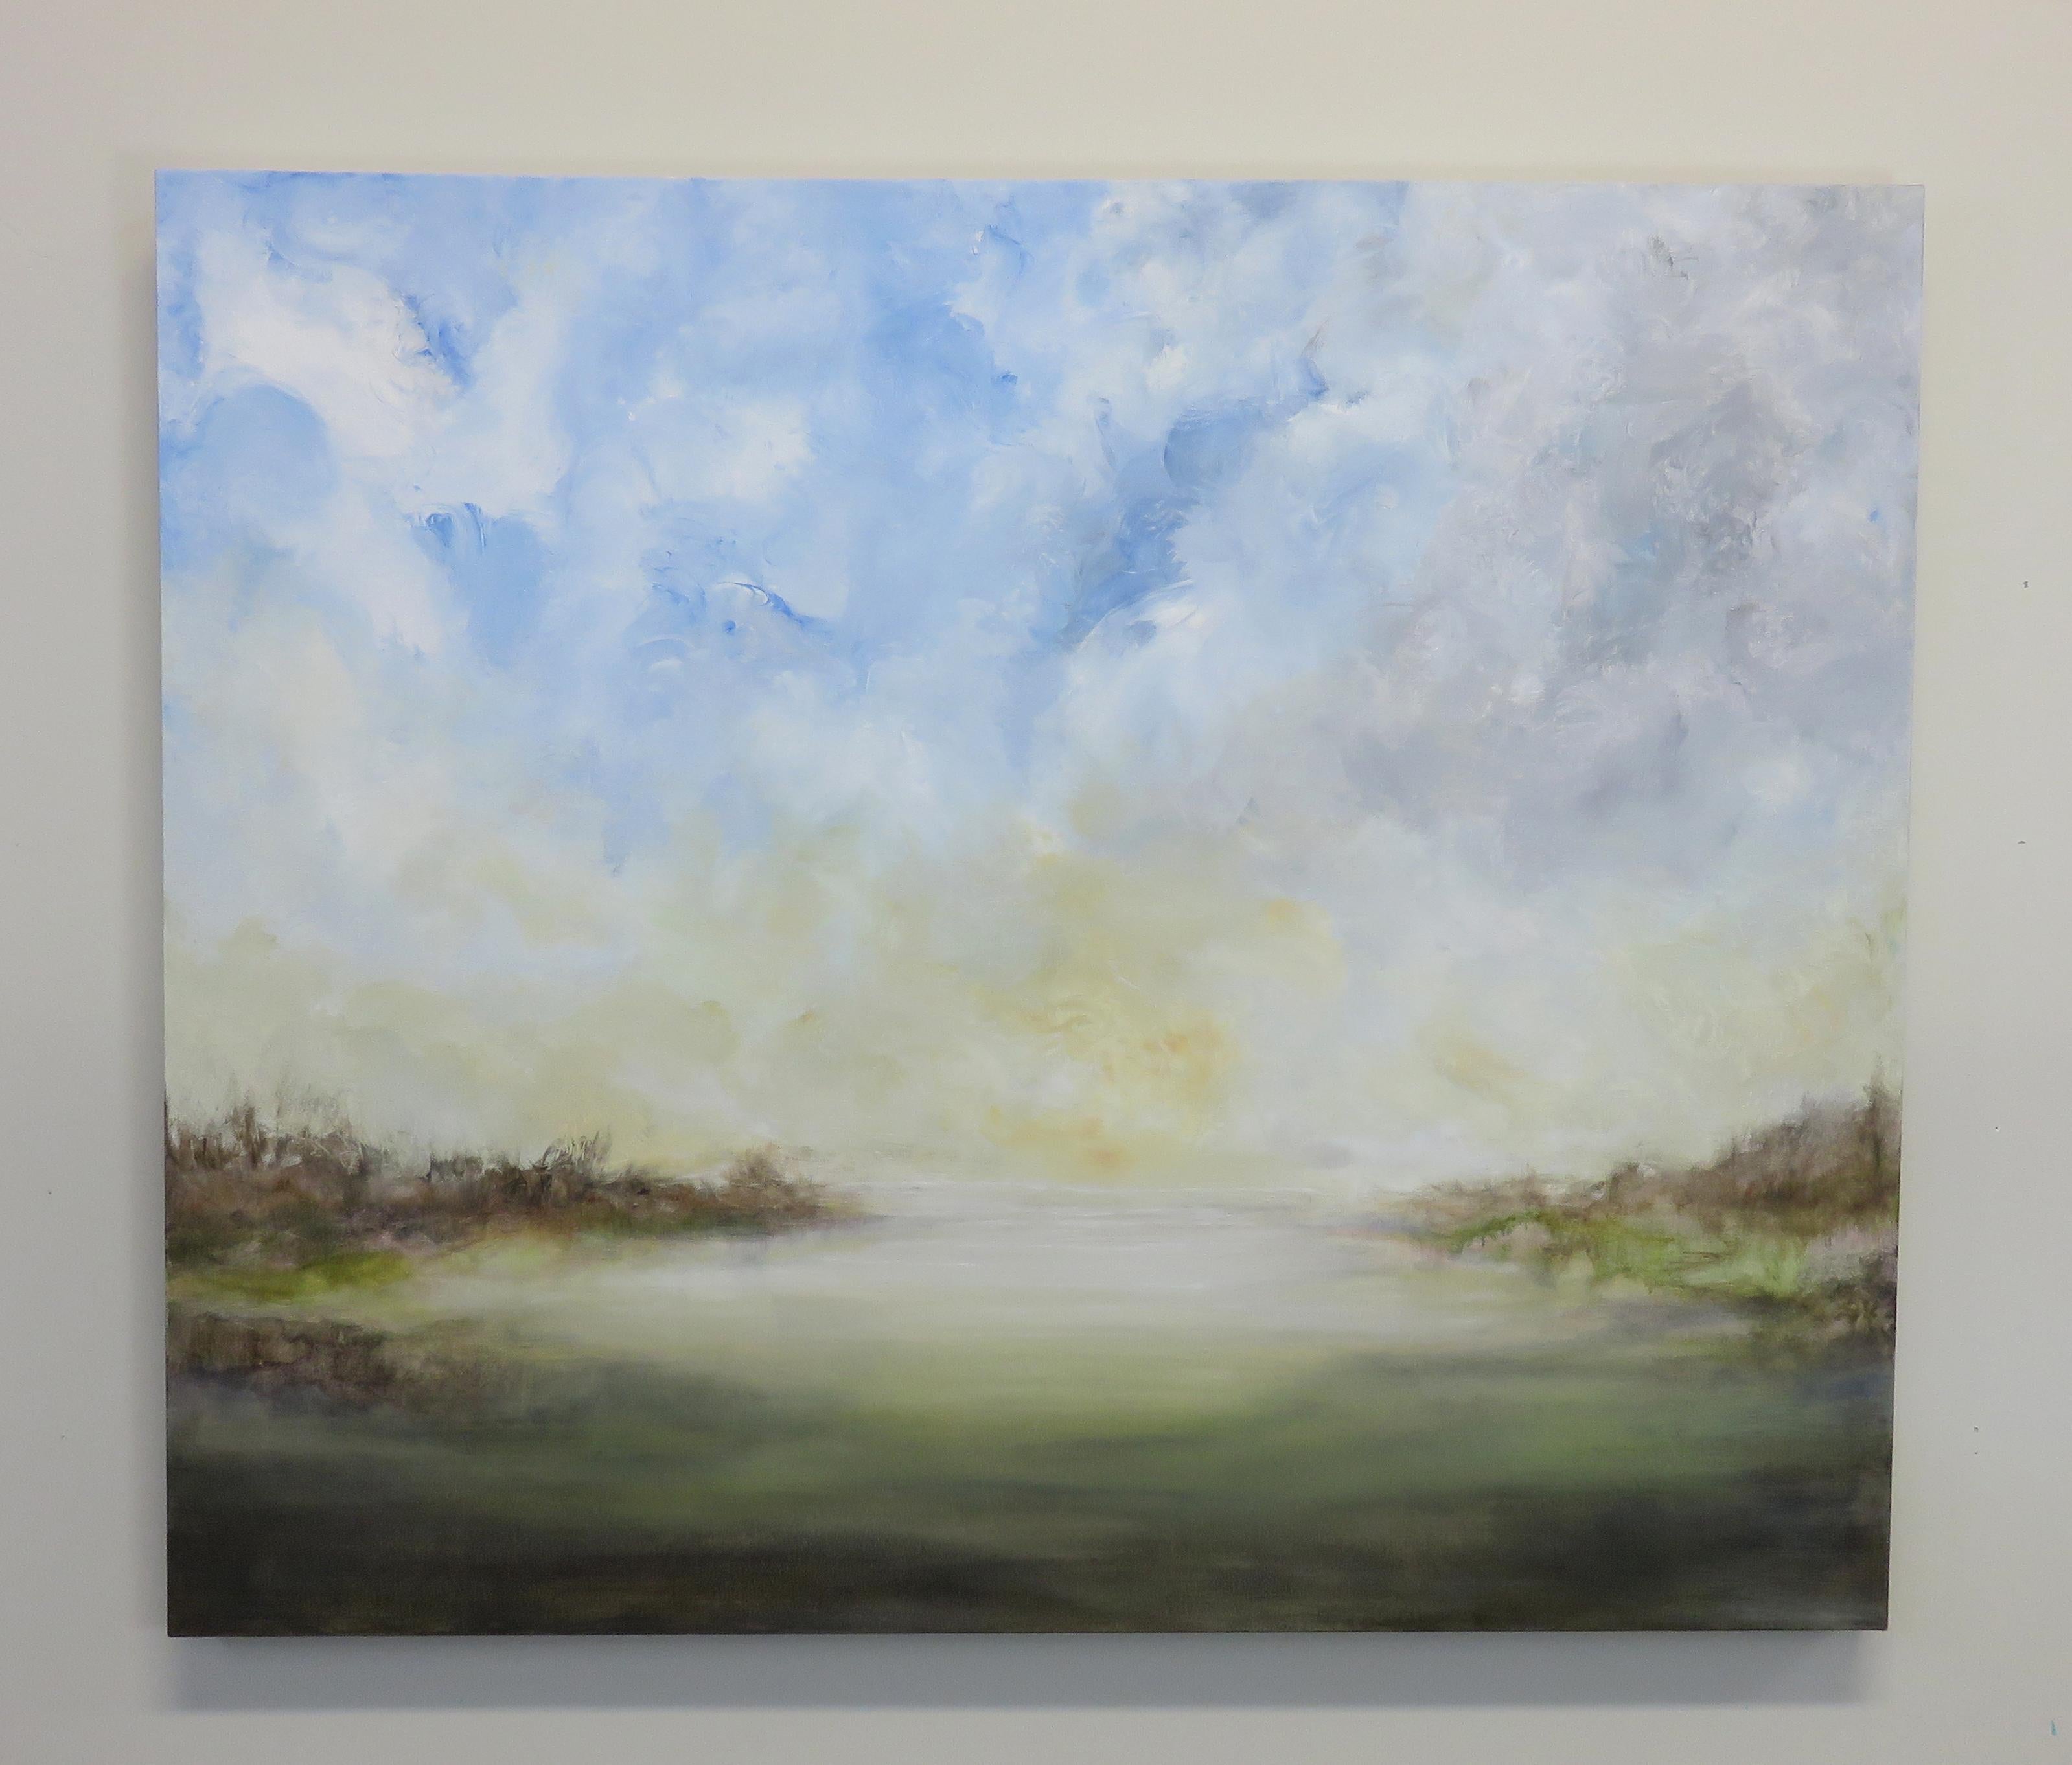 cloudy & dreamy sky acrylic painting on canvas 6x6. acrylic art decor